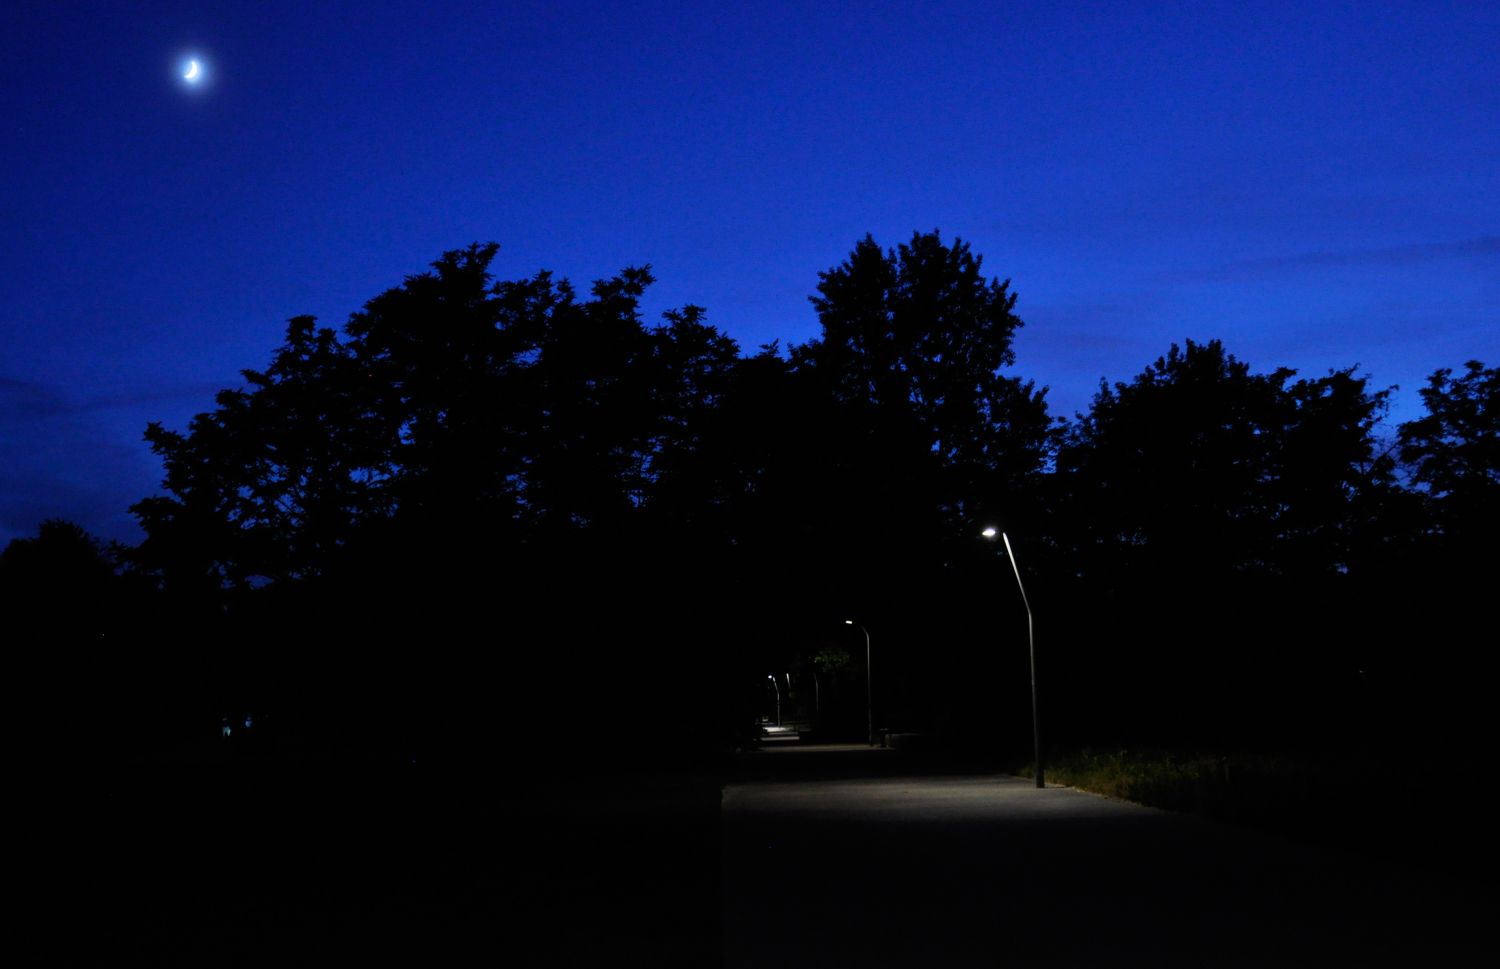 Die Aufnahme zeigt einen beleuchteten Parkweg bei Nacht. Am dunkelblauen Himmel steht klein der Mond. Vor den schwarzen Silhouetten ausladender Baumkronen erhellen Laternen punktuell den Gehweg. Ihr Licht fällt kegelförmig auf den Betonboden, in den Abständen zwischen den Laternen ist es dunkel. 